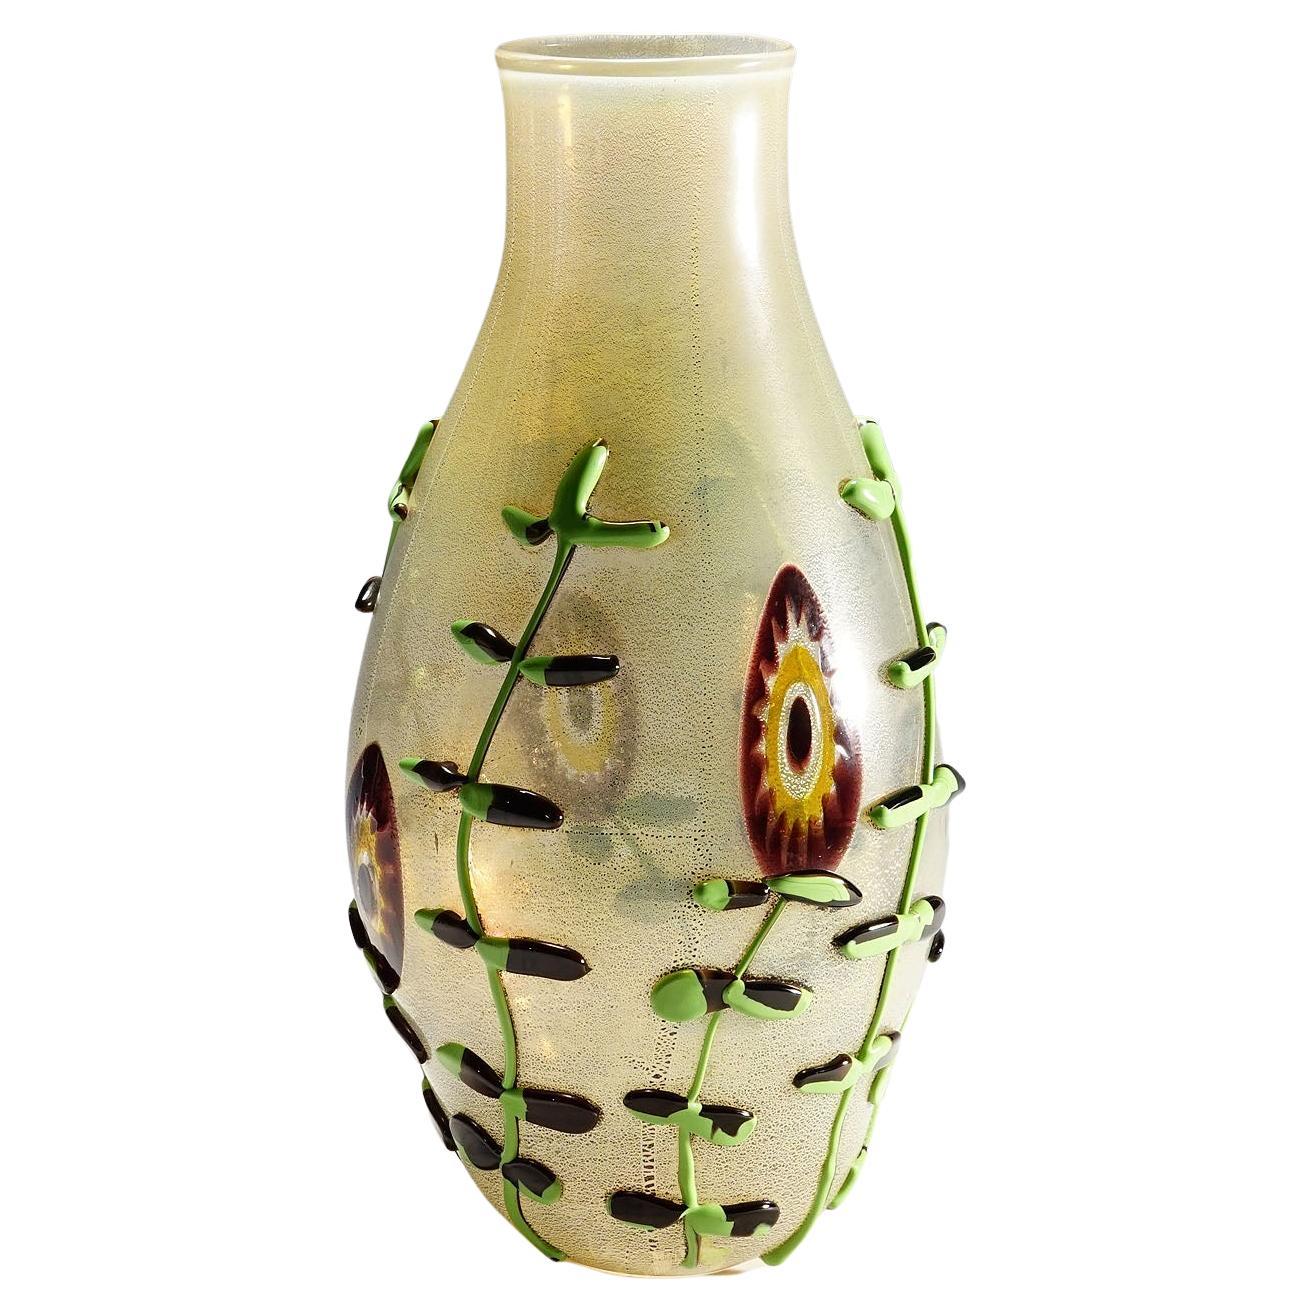 Monumental Art Glass Vase by Licio Zanetti, Murano, circa 1970s For Sale